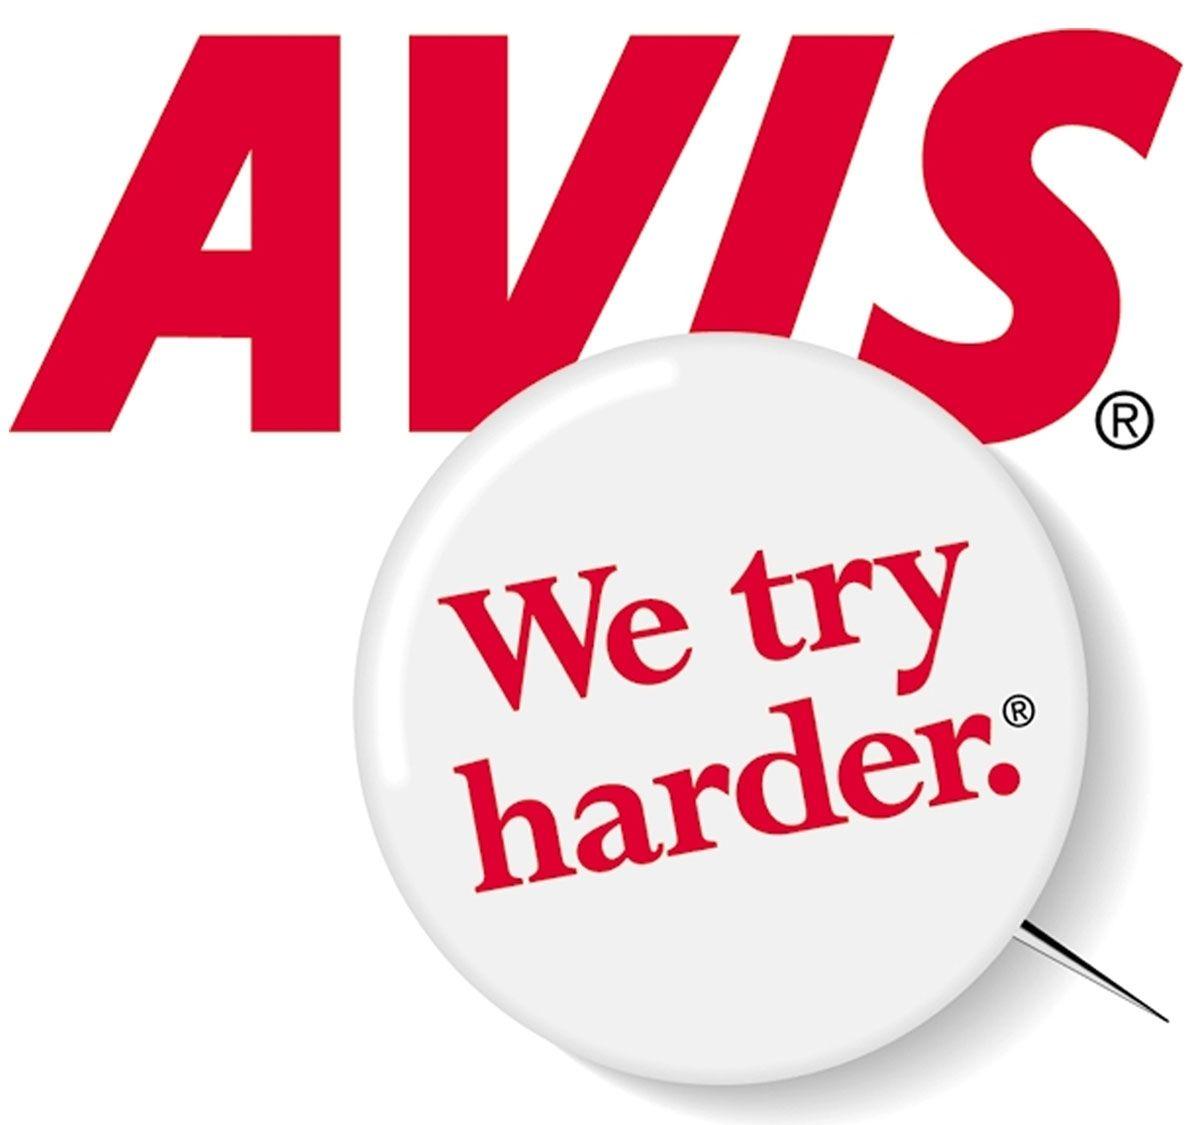 Avis Rent a Car Logo - AVIS St Kitts | We Try Harder. | Home